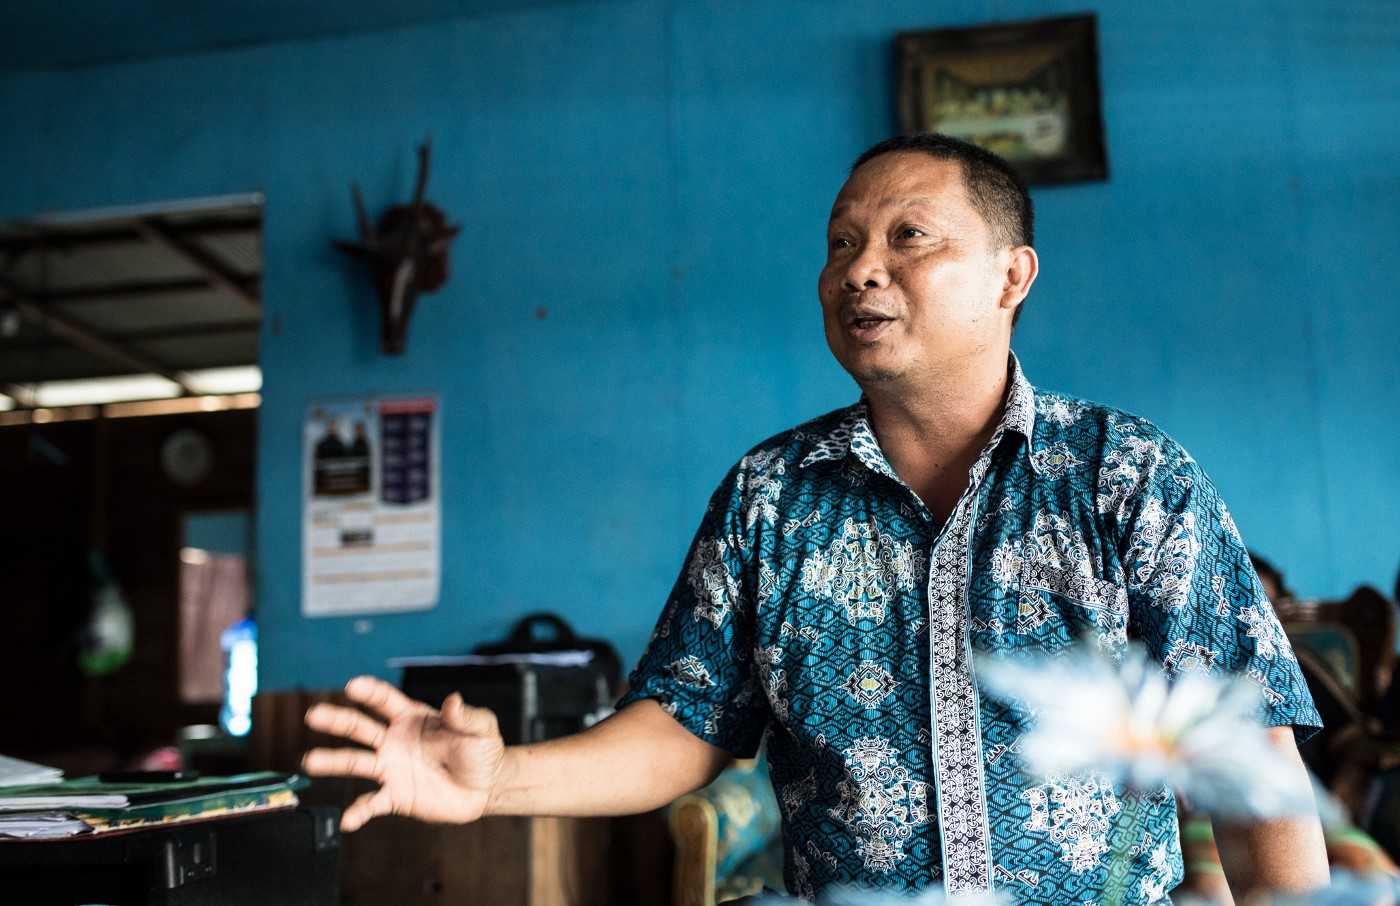 Photo of Iswan Guna at his home in Palangkaraya, 2017